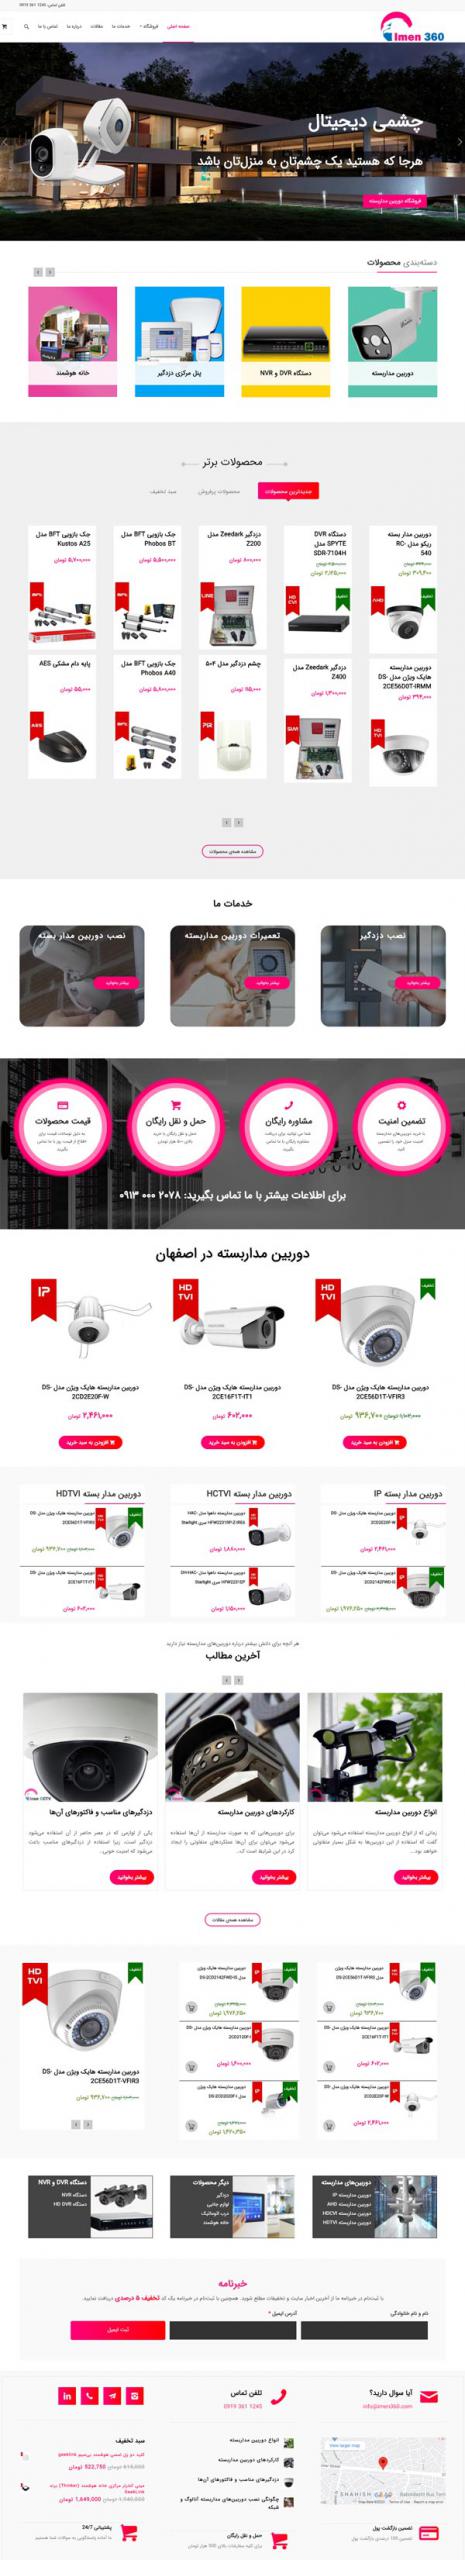 طراحی سایت ایمن 360 | فروش تجهیزات حفاظتی و دوربین مدار بسته